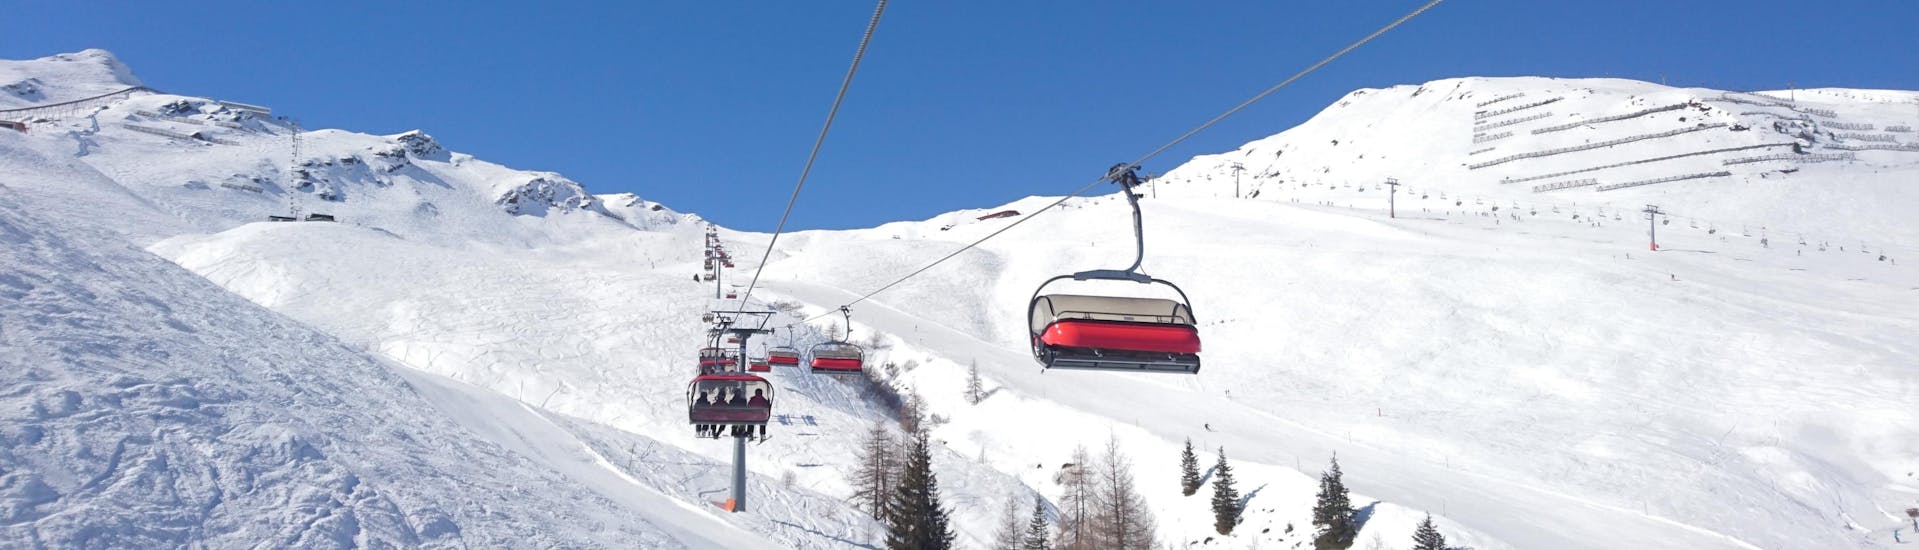 Skilift op de pistes van Götzens - Muttereralm, waar je skilessen kunt boeken.